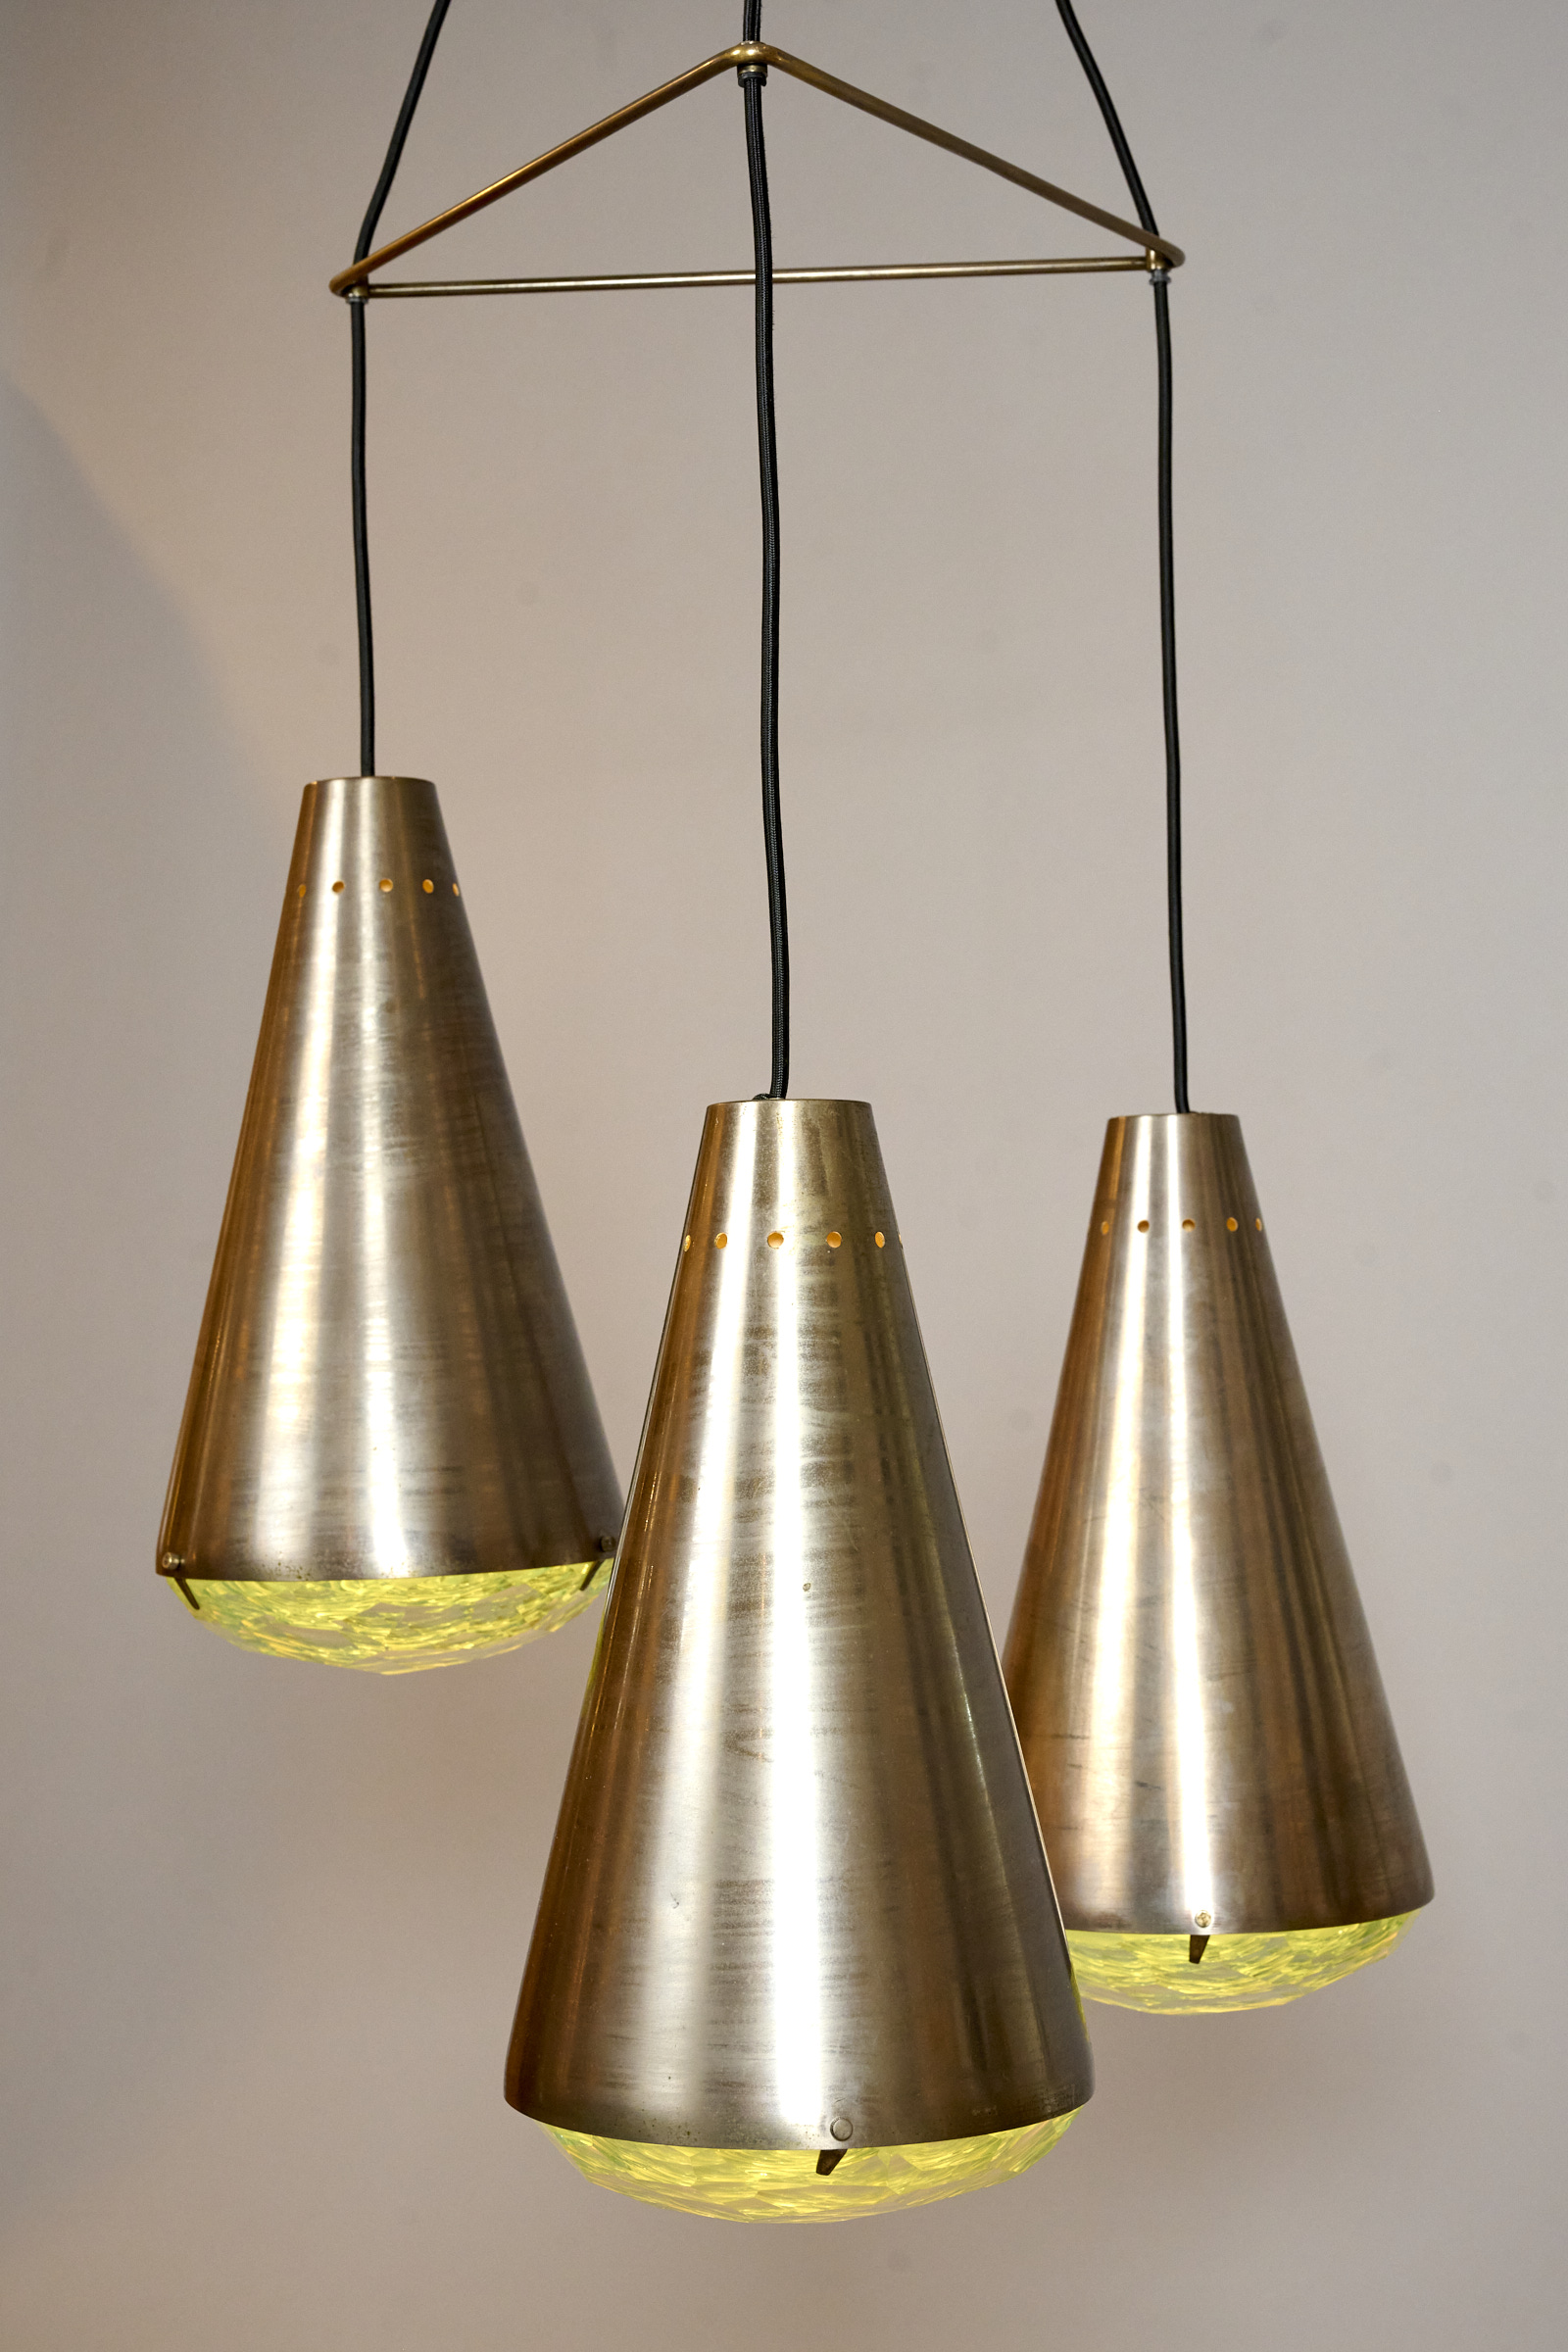 Max Ingrand 3-Light Ceiling Pendant for Fontana ArteRare Max Ingrand for Fontana Arte Chandelier